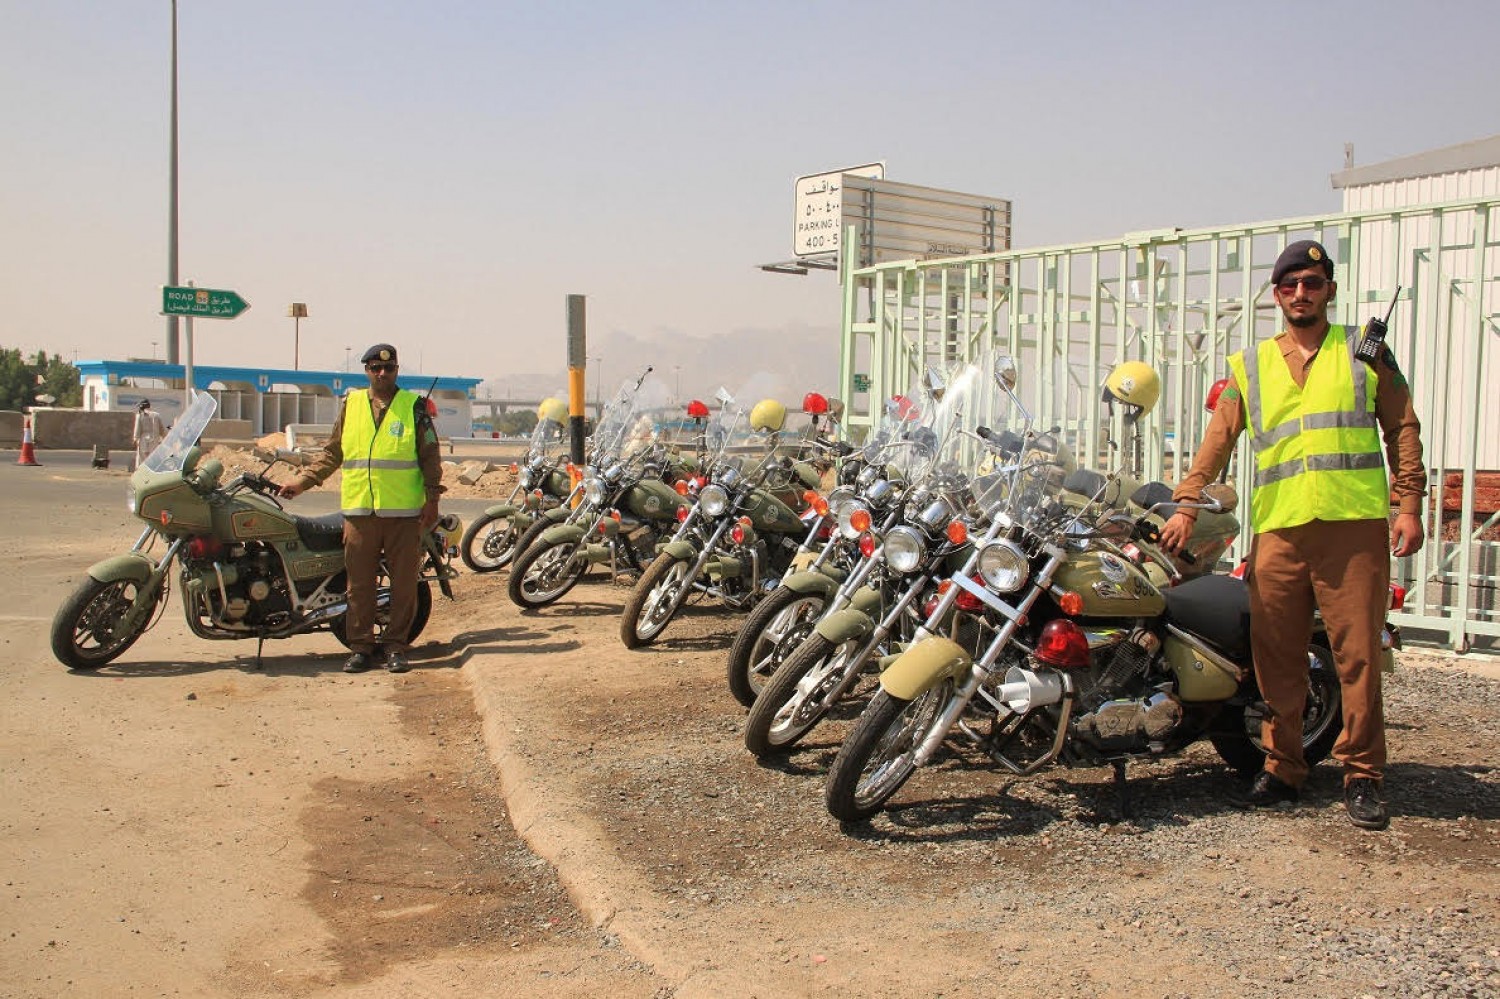 “بالصور” دراجات نارية لخدمة وحماية ضيوف الرحمن بالمخيمات